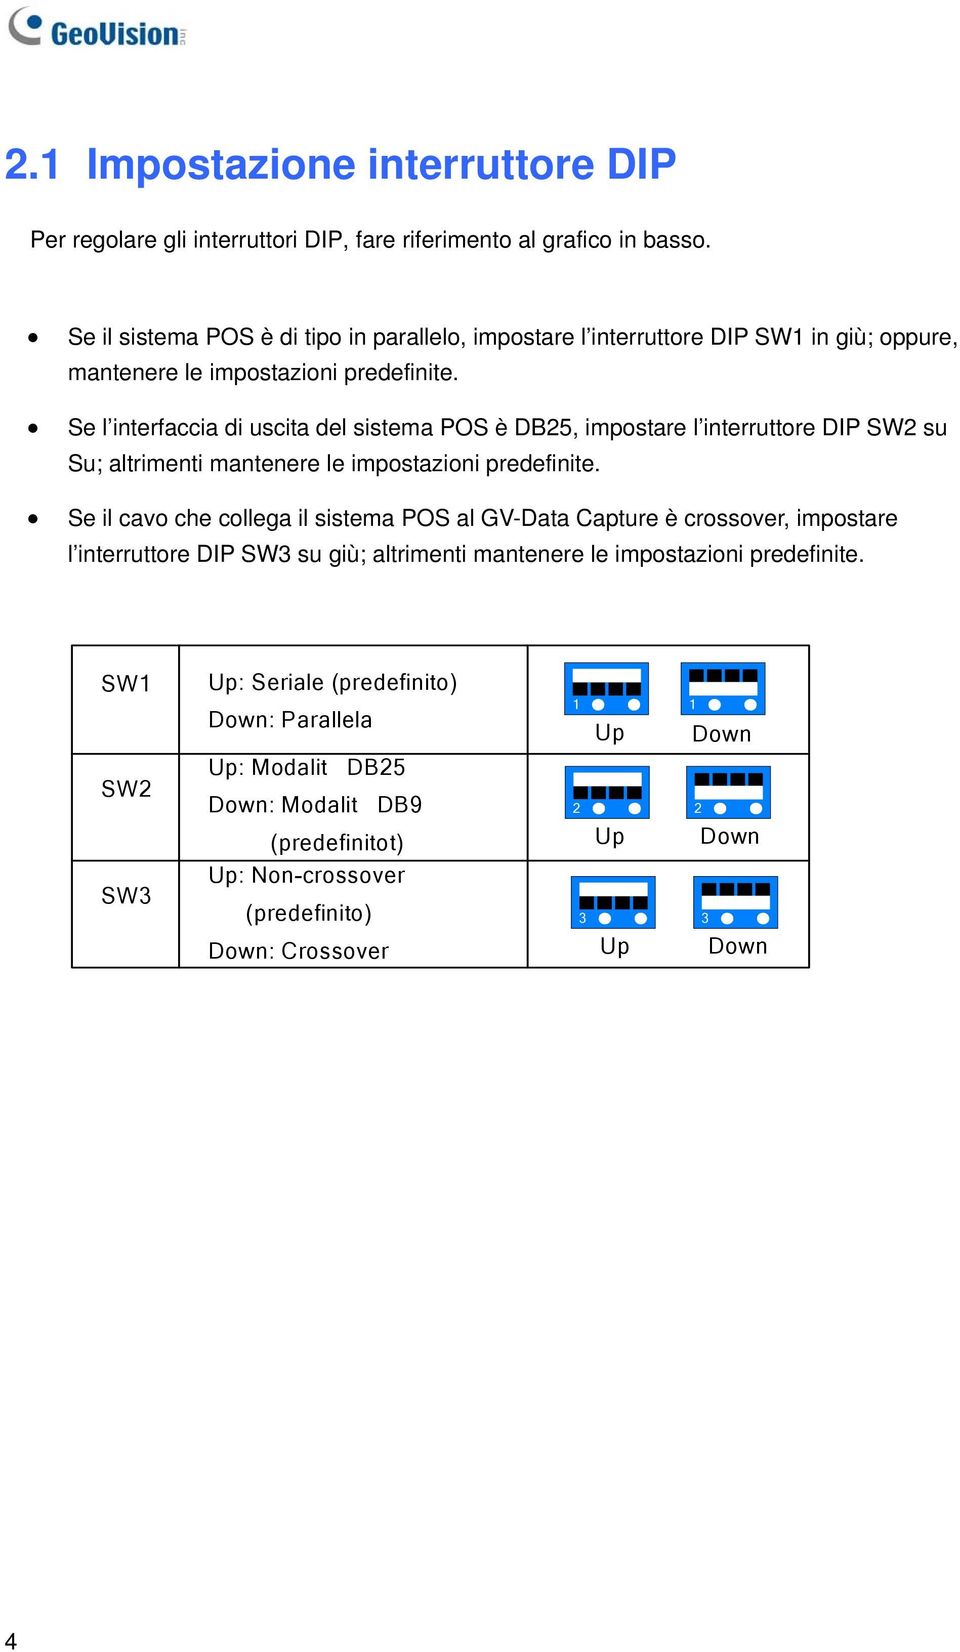 Se l interfaccia di uscita del sistema POS è DB25, impostare l interruttore DIP SW2 su Su; altrimenti mantenere le impostazioni predefinite.